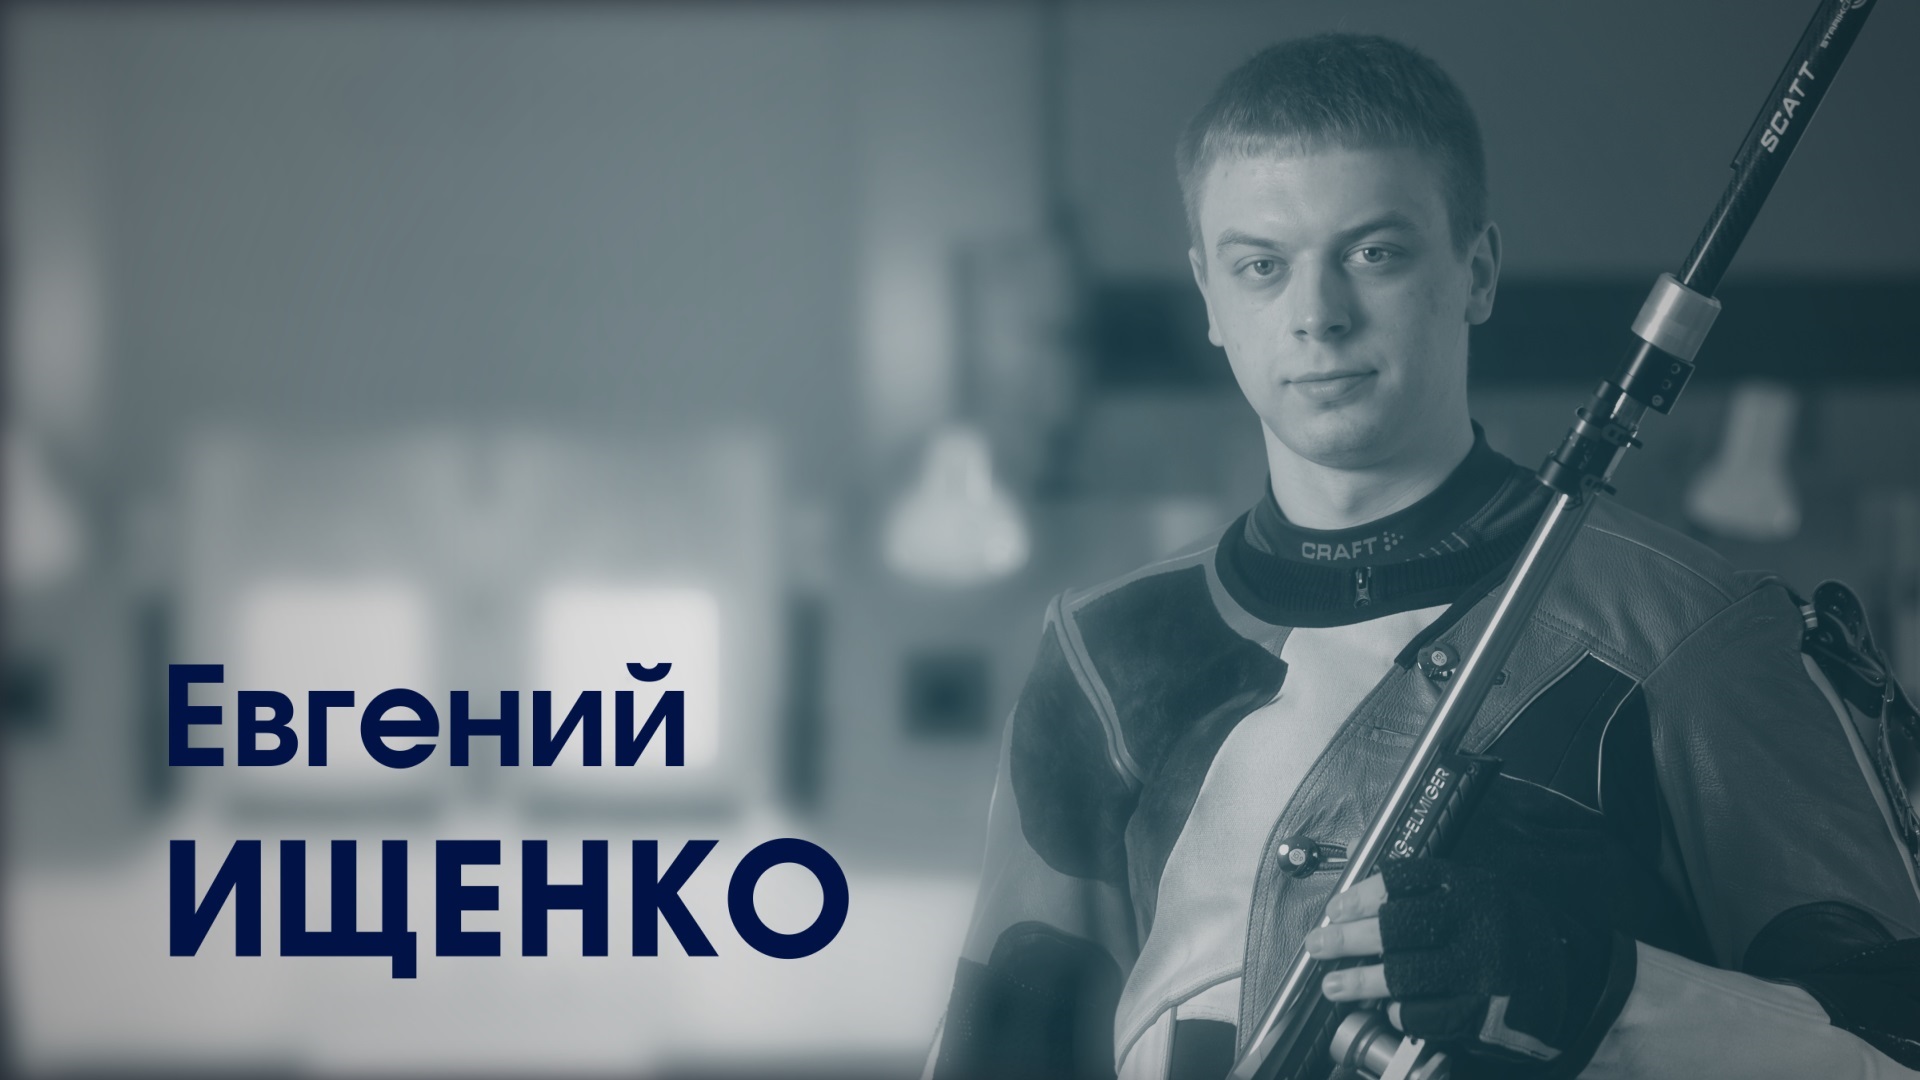 Евгений Ищенко. Мастер спорта международного класса по пулевой стрельбе.